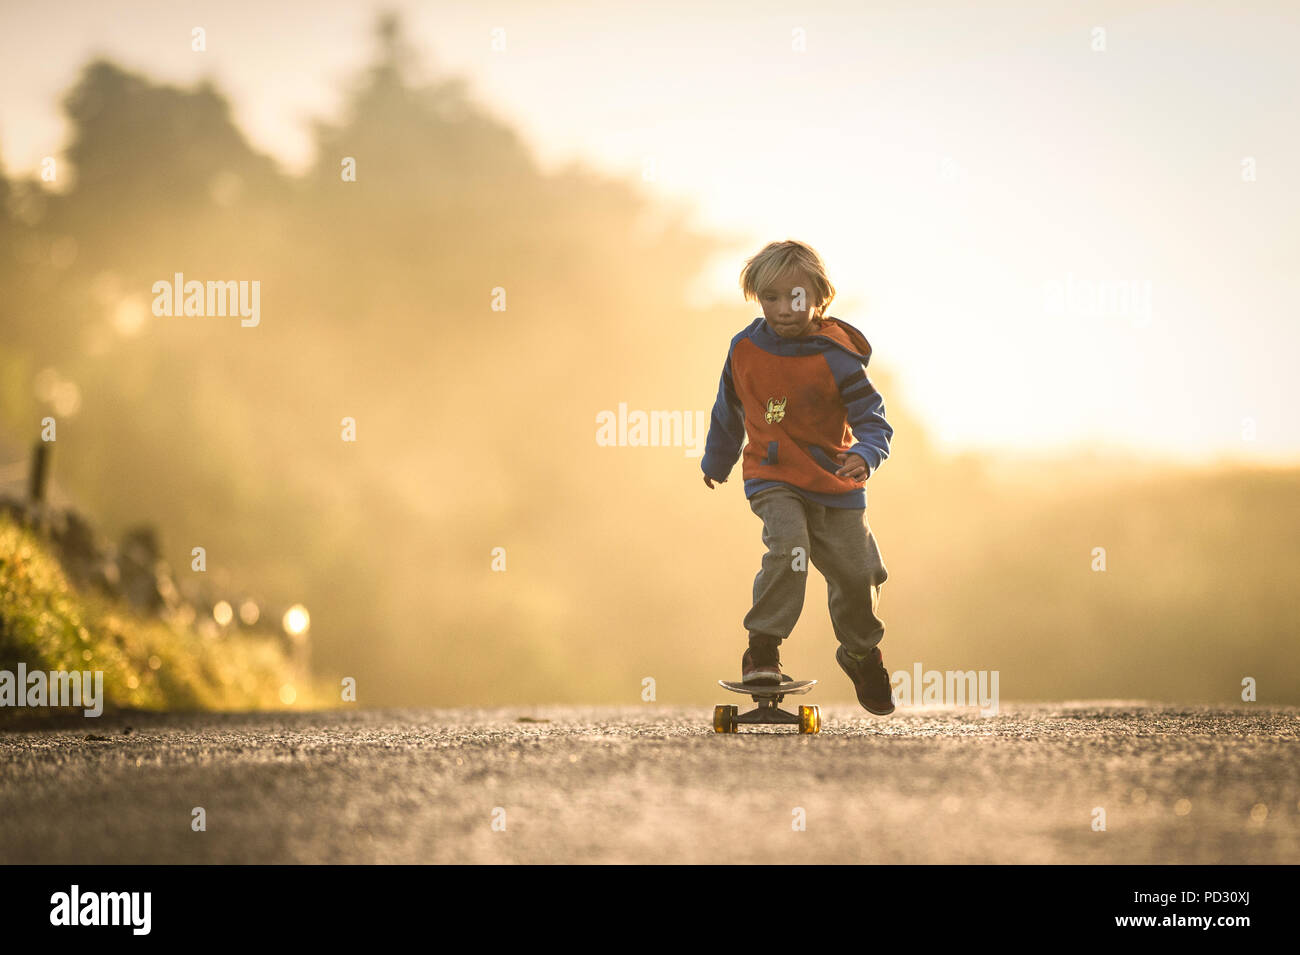 Jeune garçon skate au lever du soleil, Lahinch, Clare, Irlande Banque D'Images